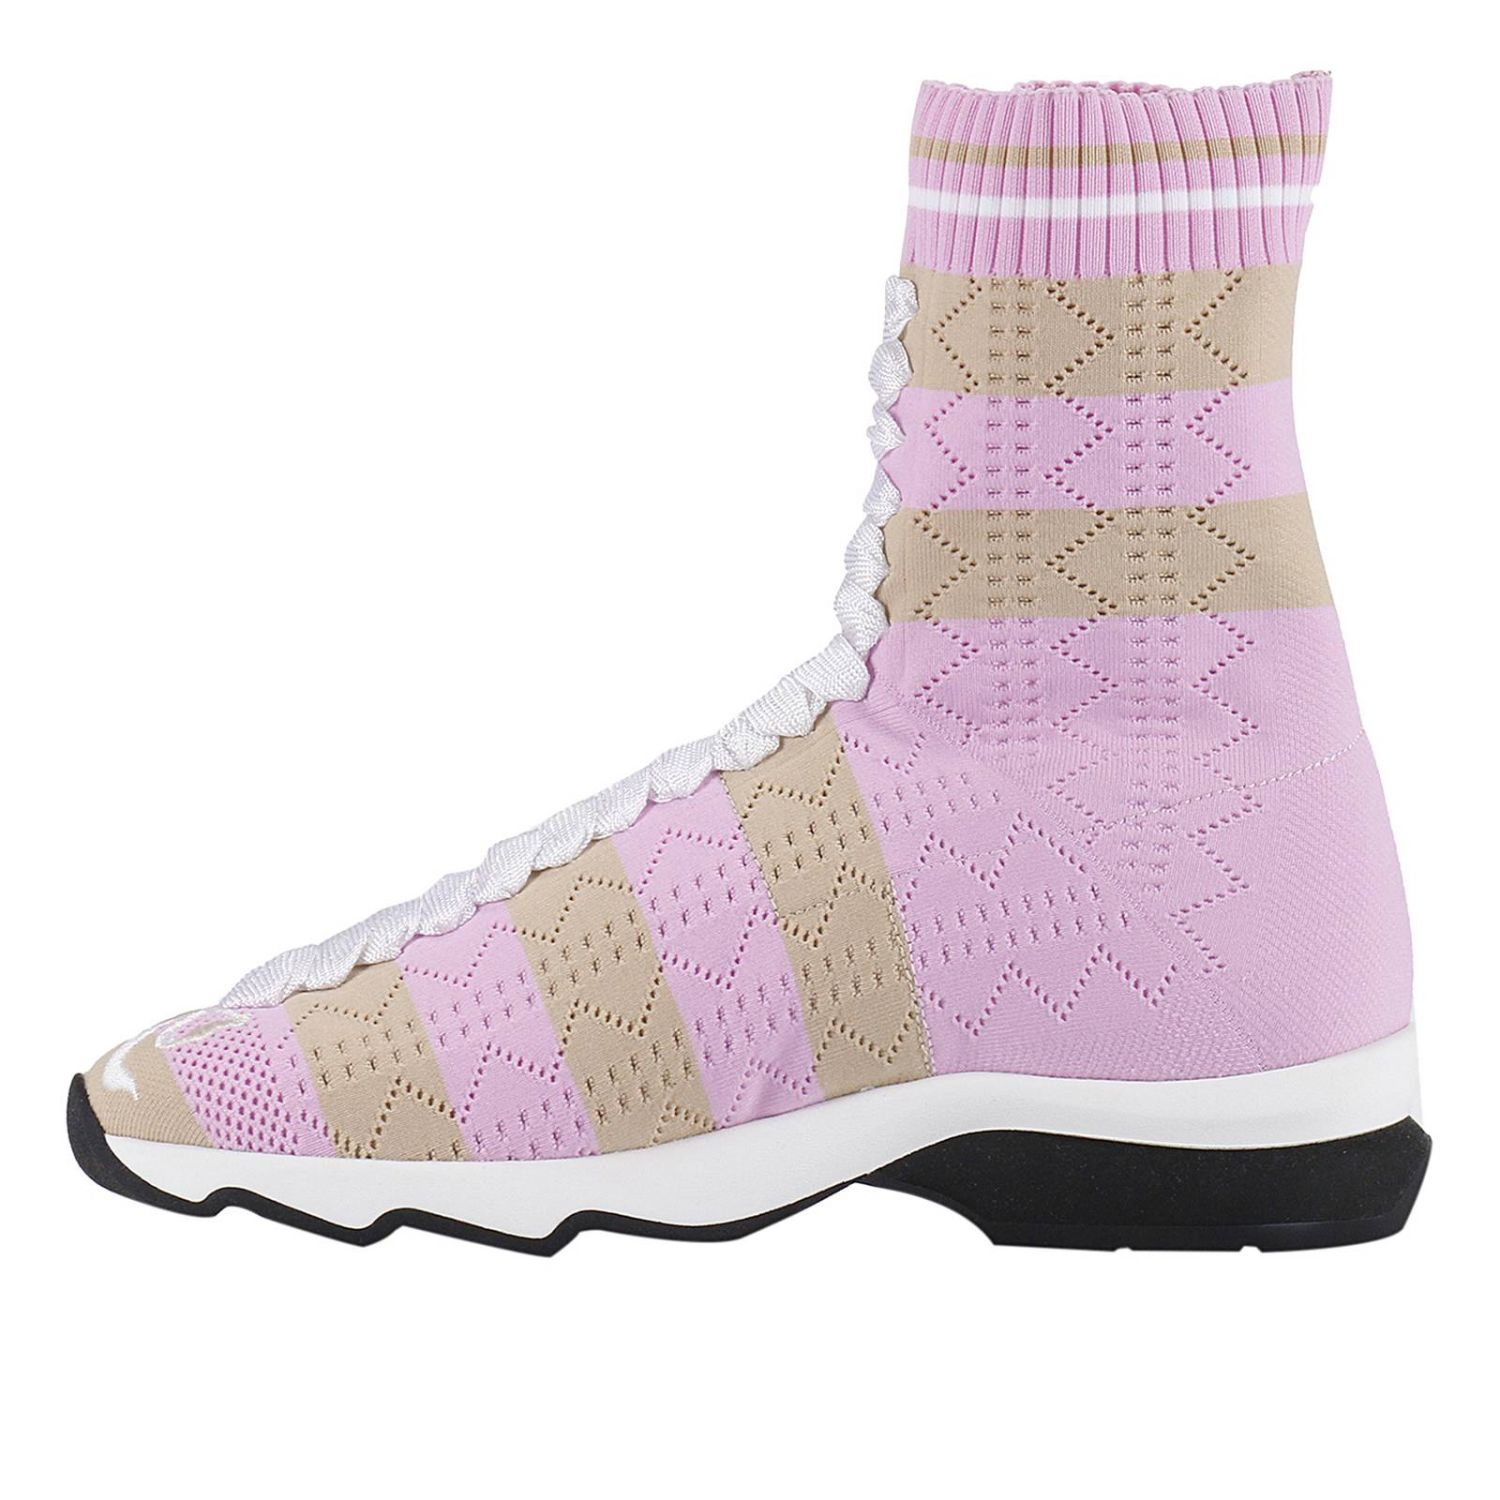 FENDI: Shoes women | Sneakers Fendi Women Pink | Sneakers Fendi 8T6515 ...